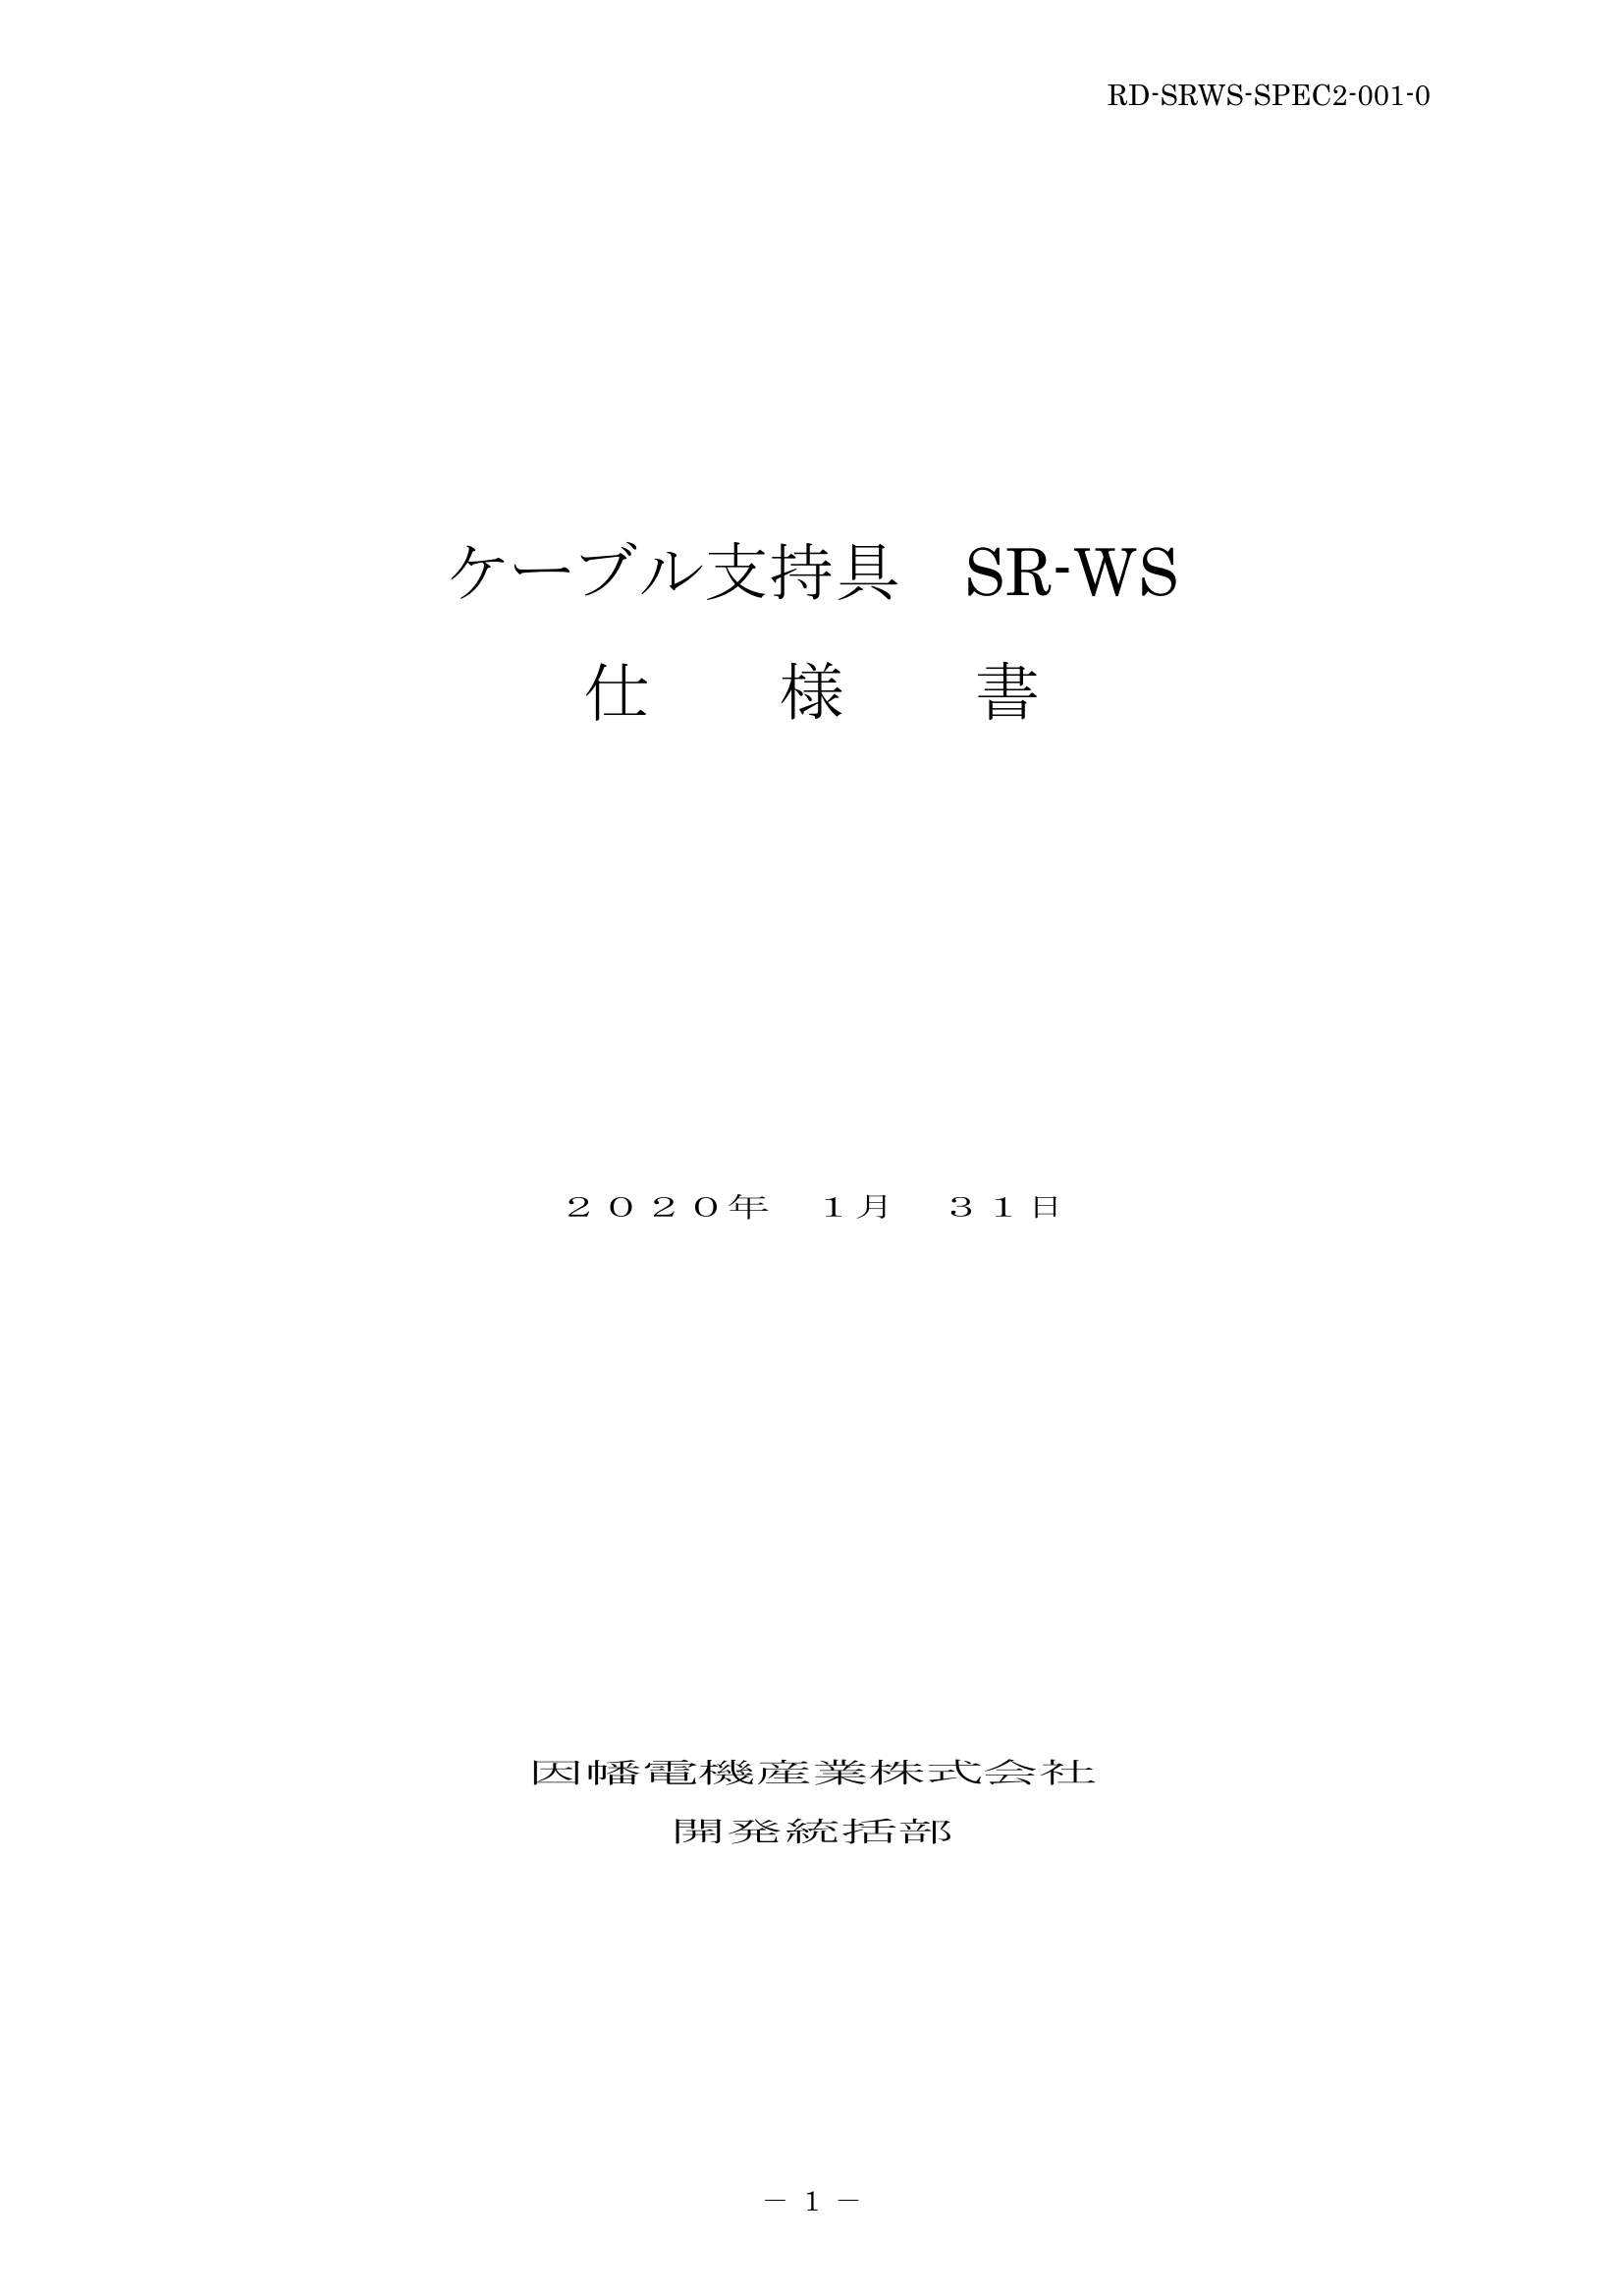 SR-WS_仕様書_20200131.pdf